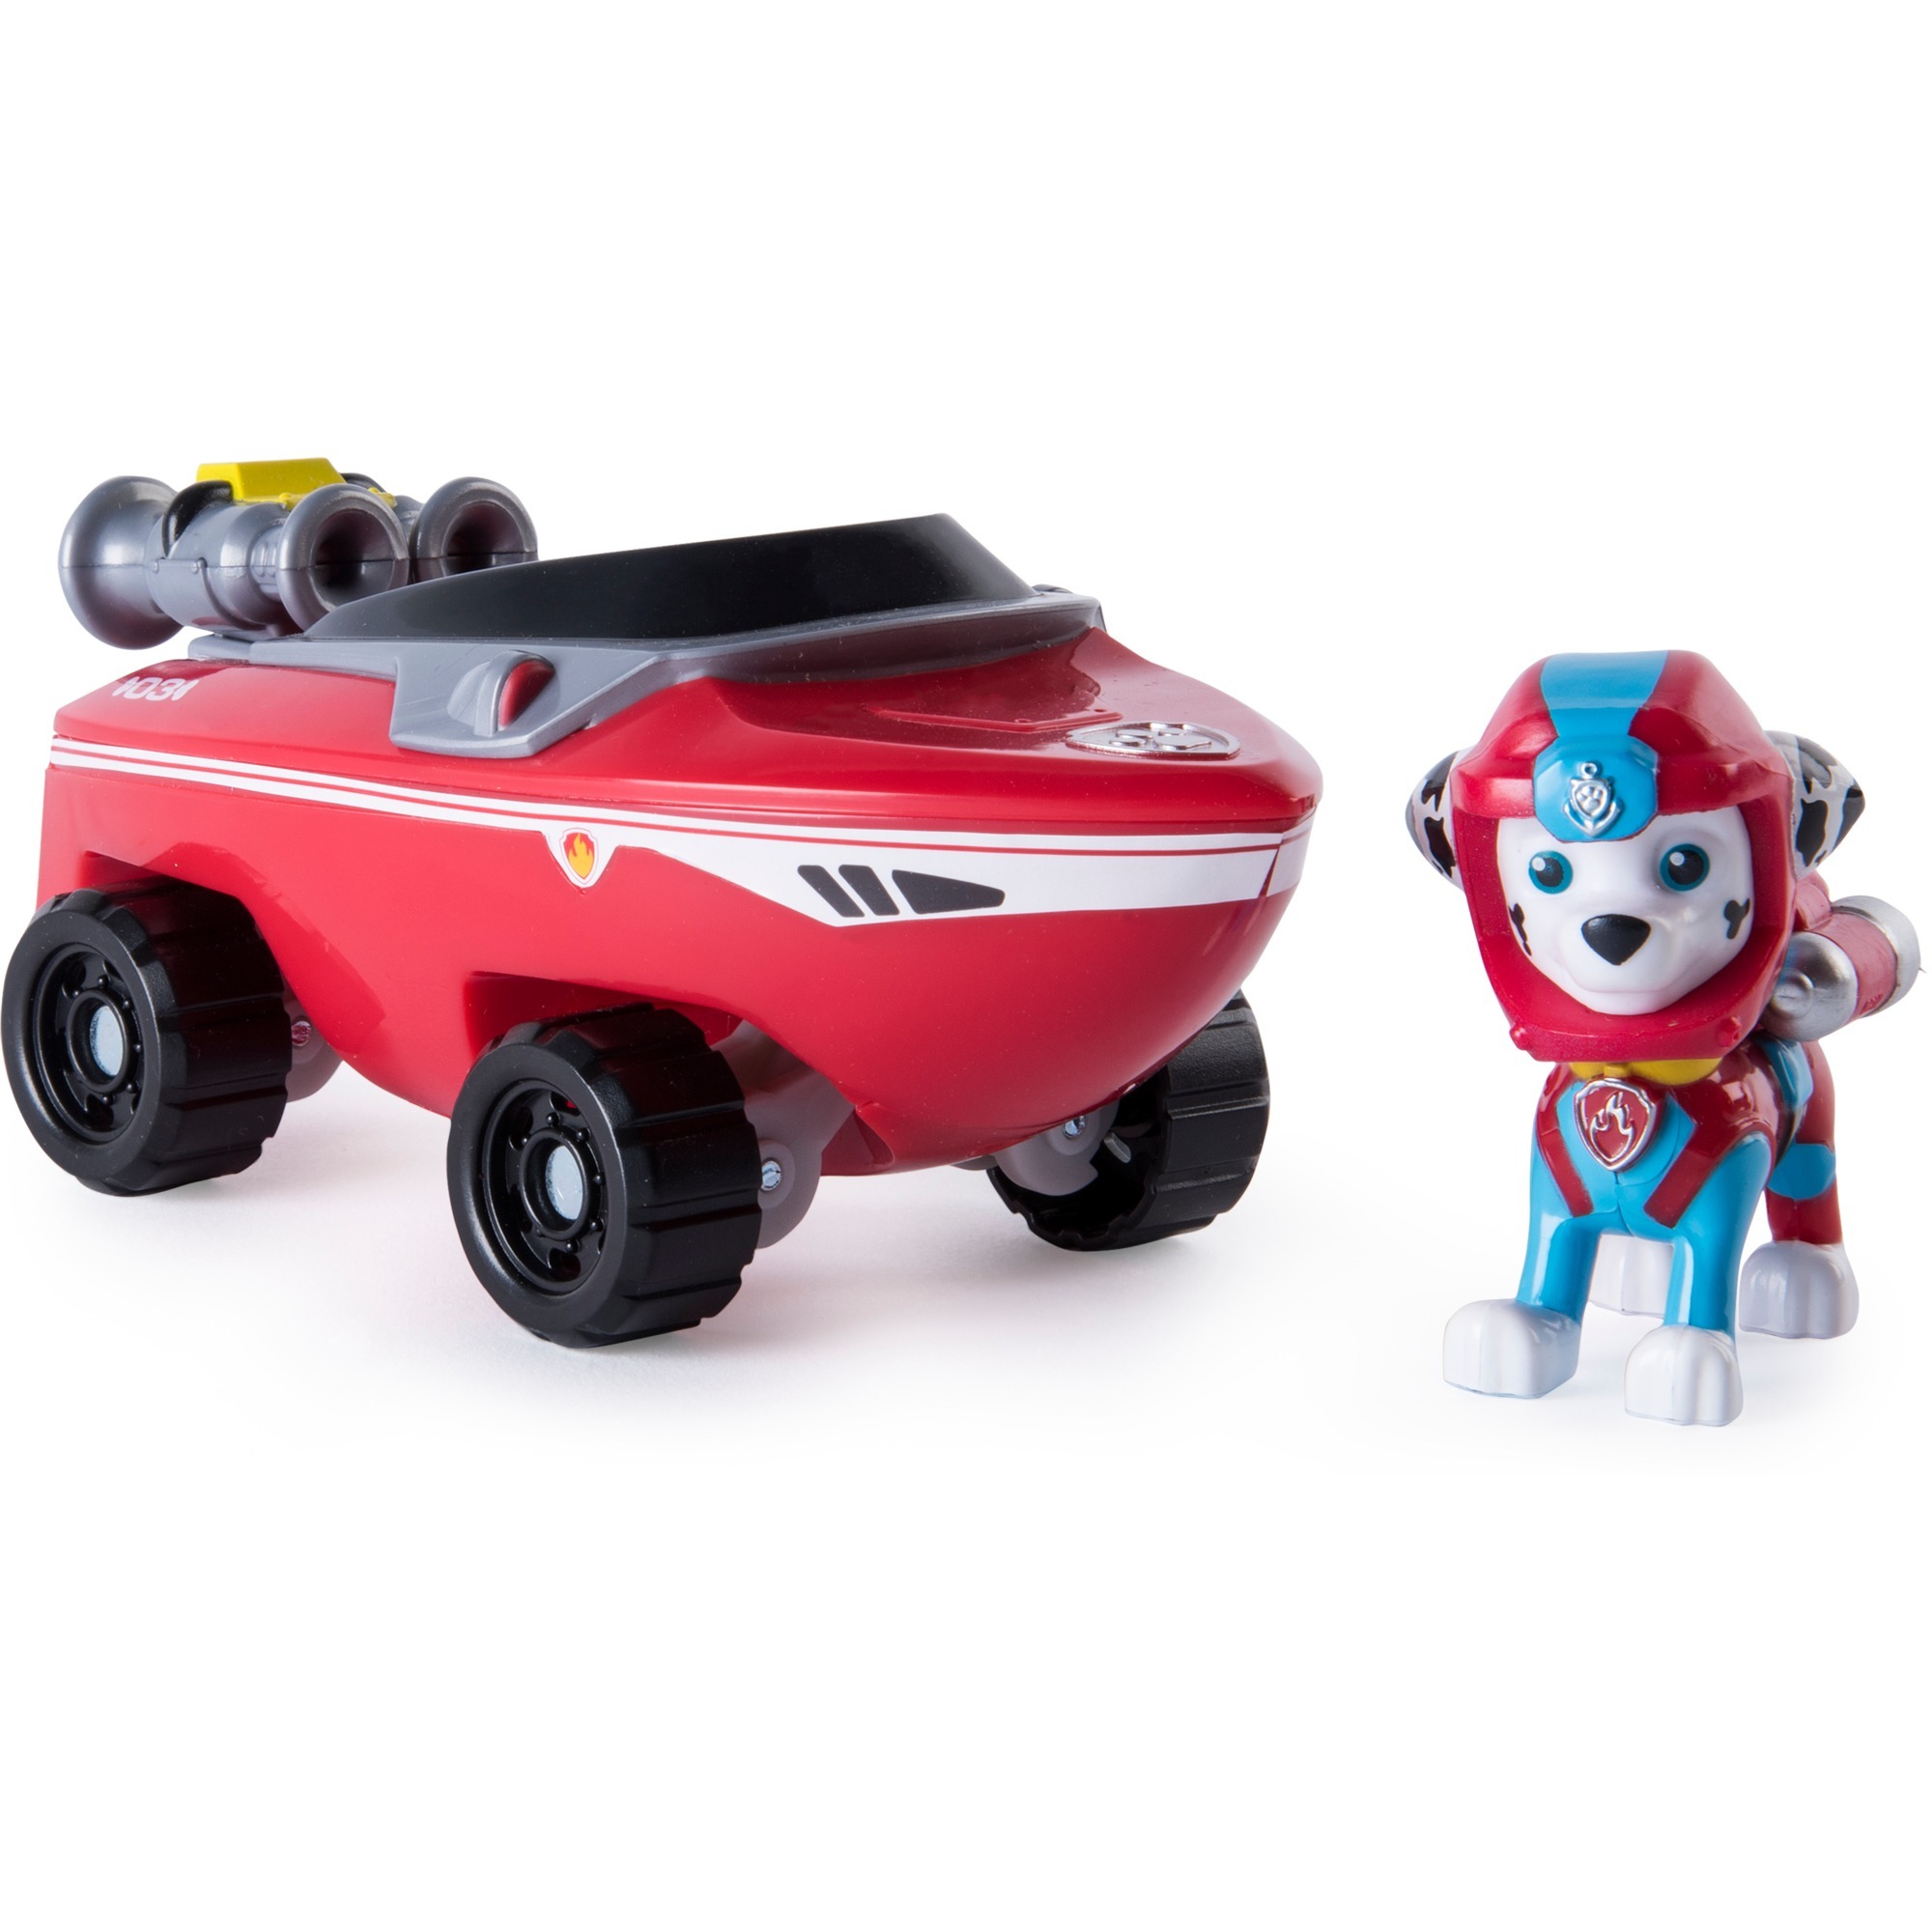 Sea Patrol Themed Vehicle Marshall, Toy vehicle